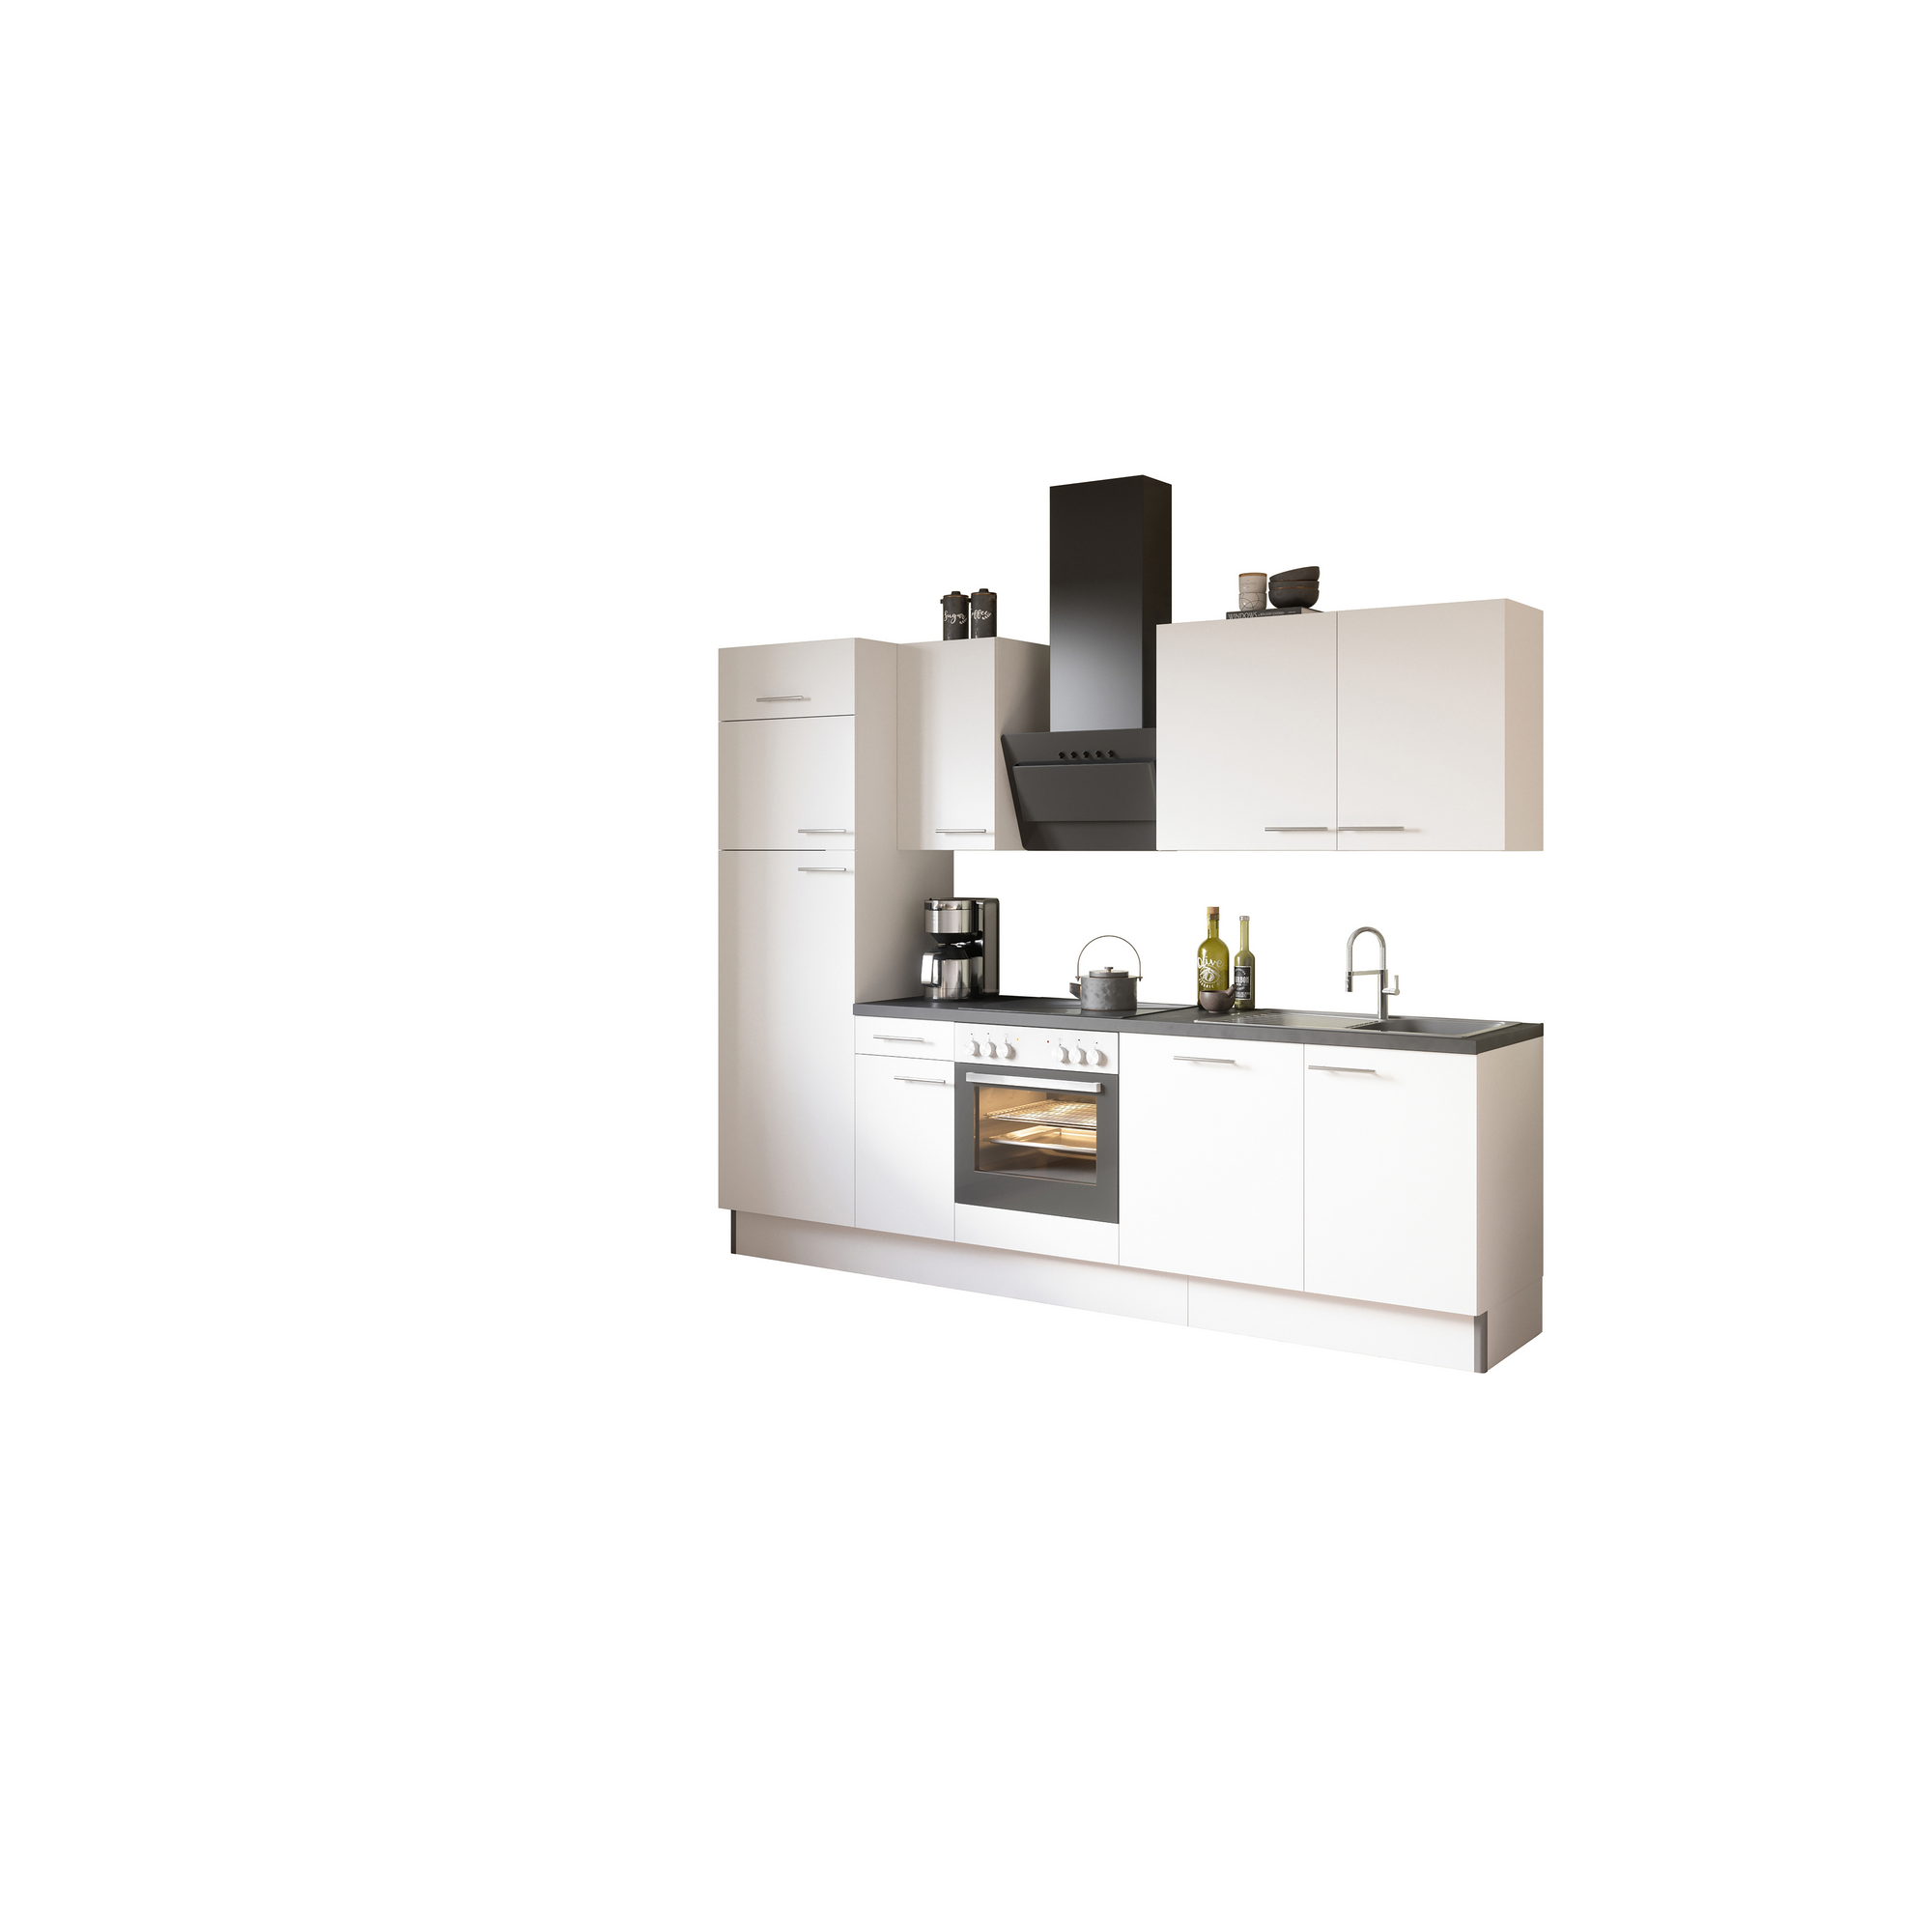 Küchenzeile mit E-Geräten 'OPTIkoncept Bengt932' weiß 270 cm + product picture